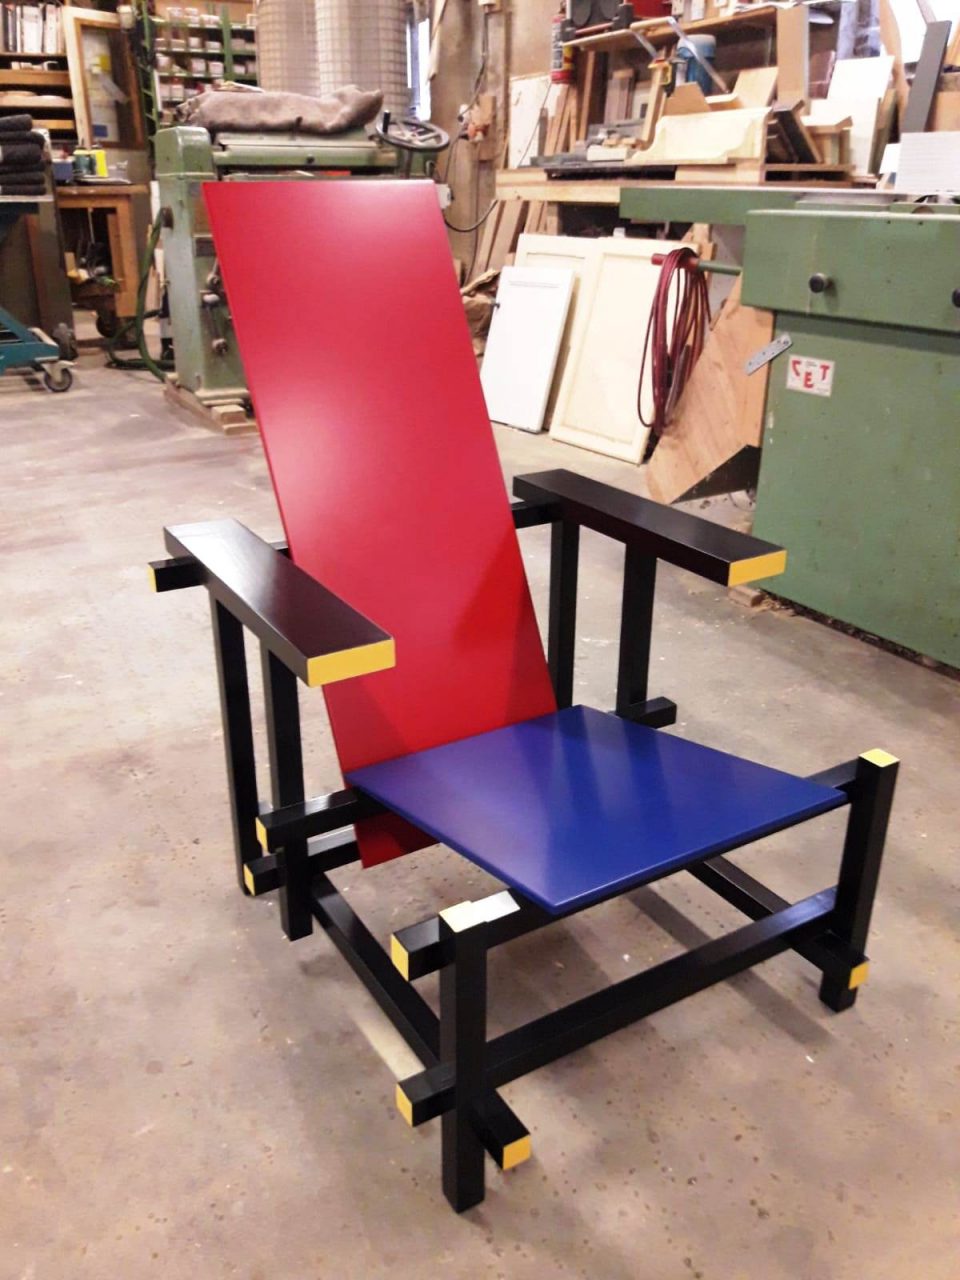 In 2007 heb ik deze “Red Blue chair” gemaakt naar origineel ontwerp van Rietveld.Recent is er een verhuisschade ontstaan